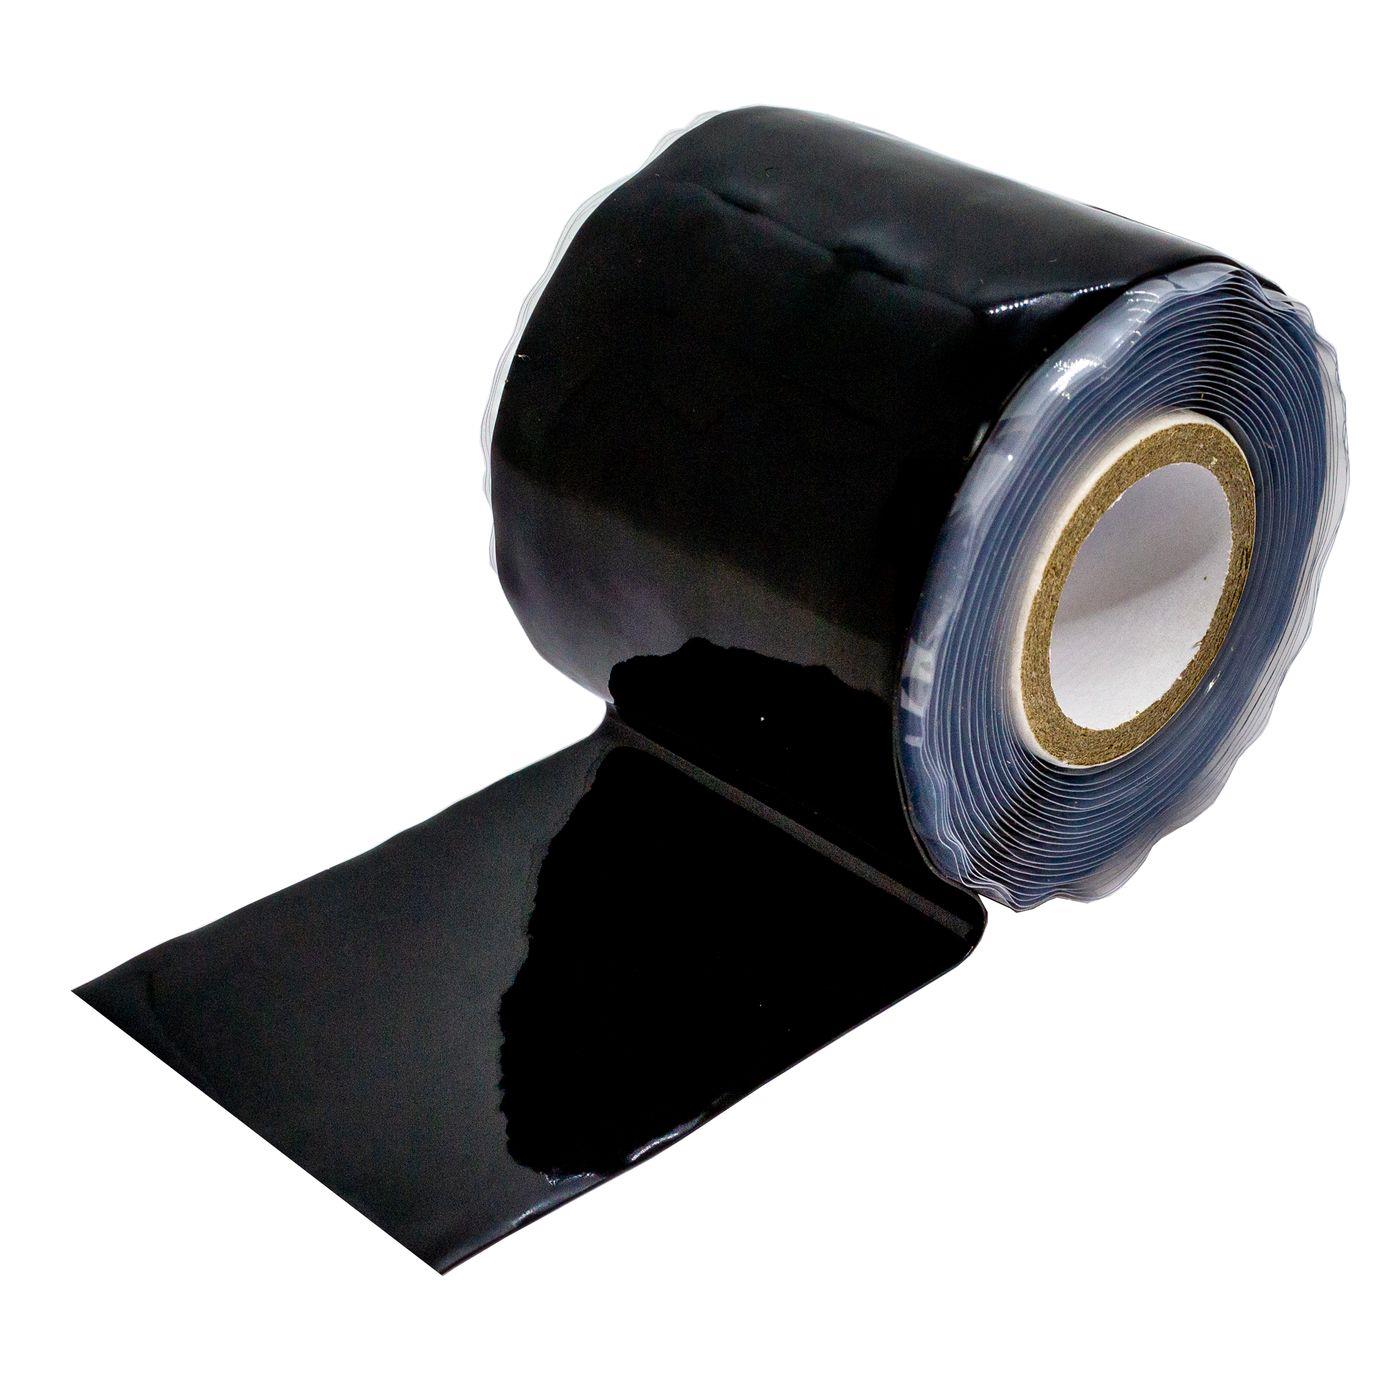 3m Selbstverschweißendes Silikonband 50mm Abdichtband schwarz -50...260°C 0,50mm